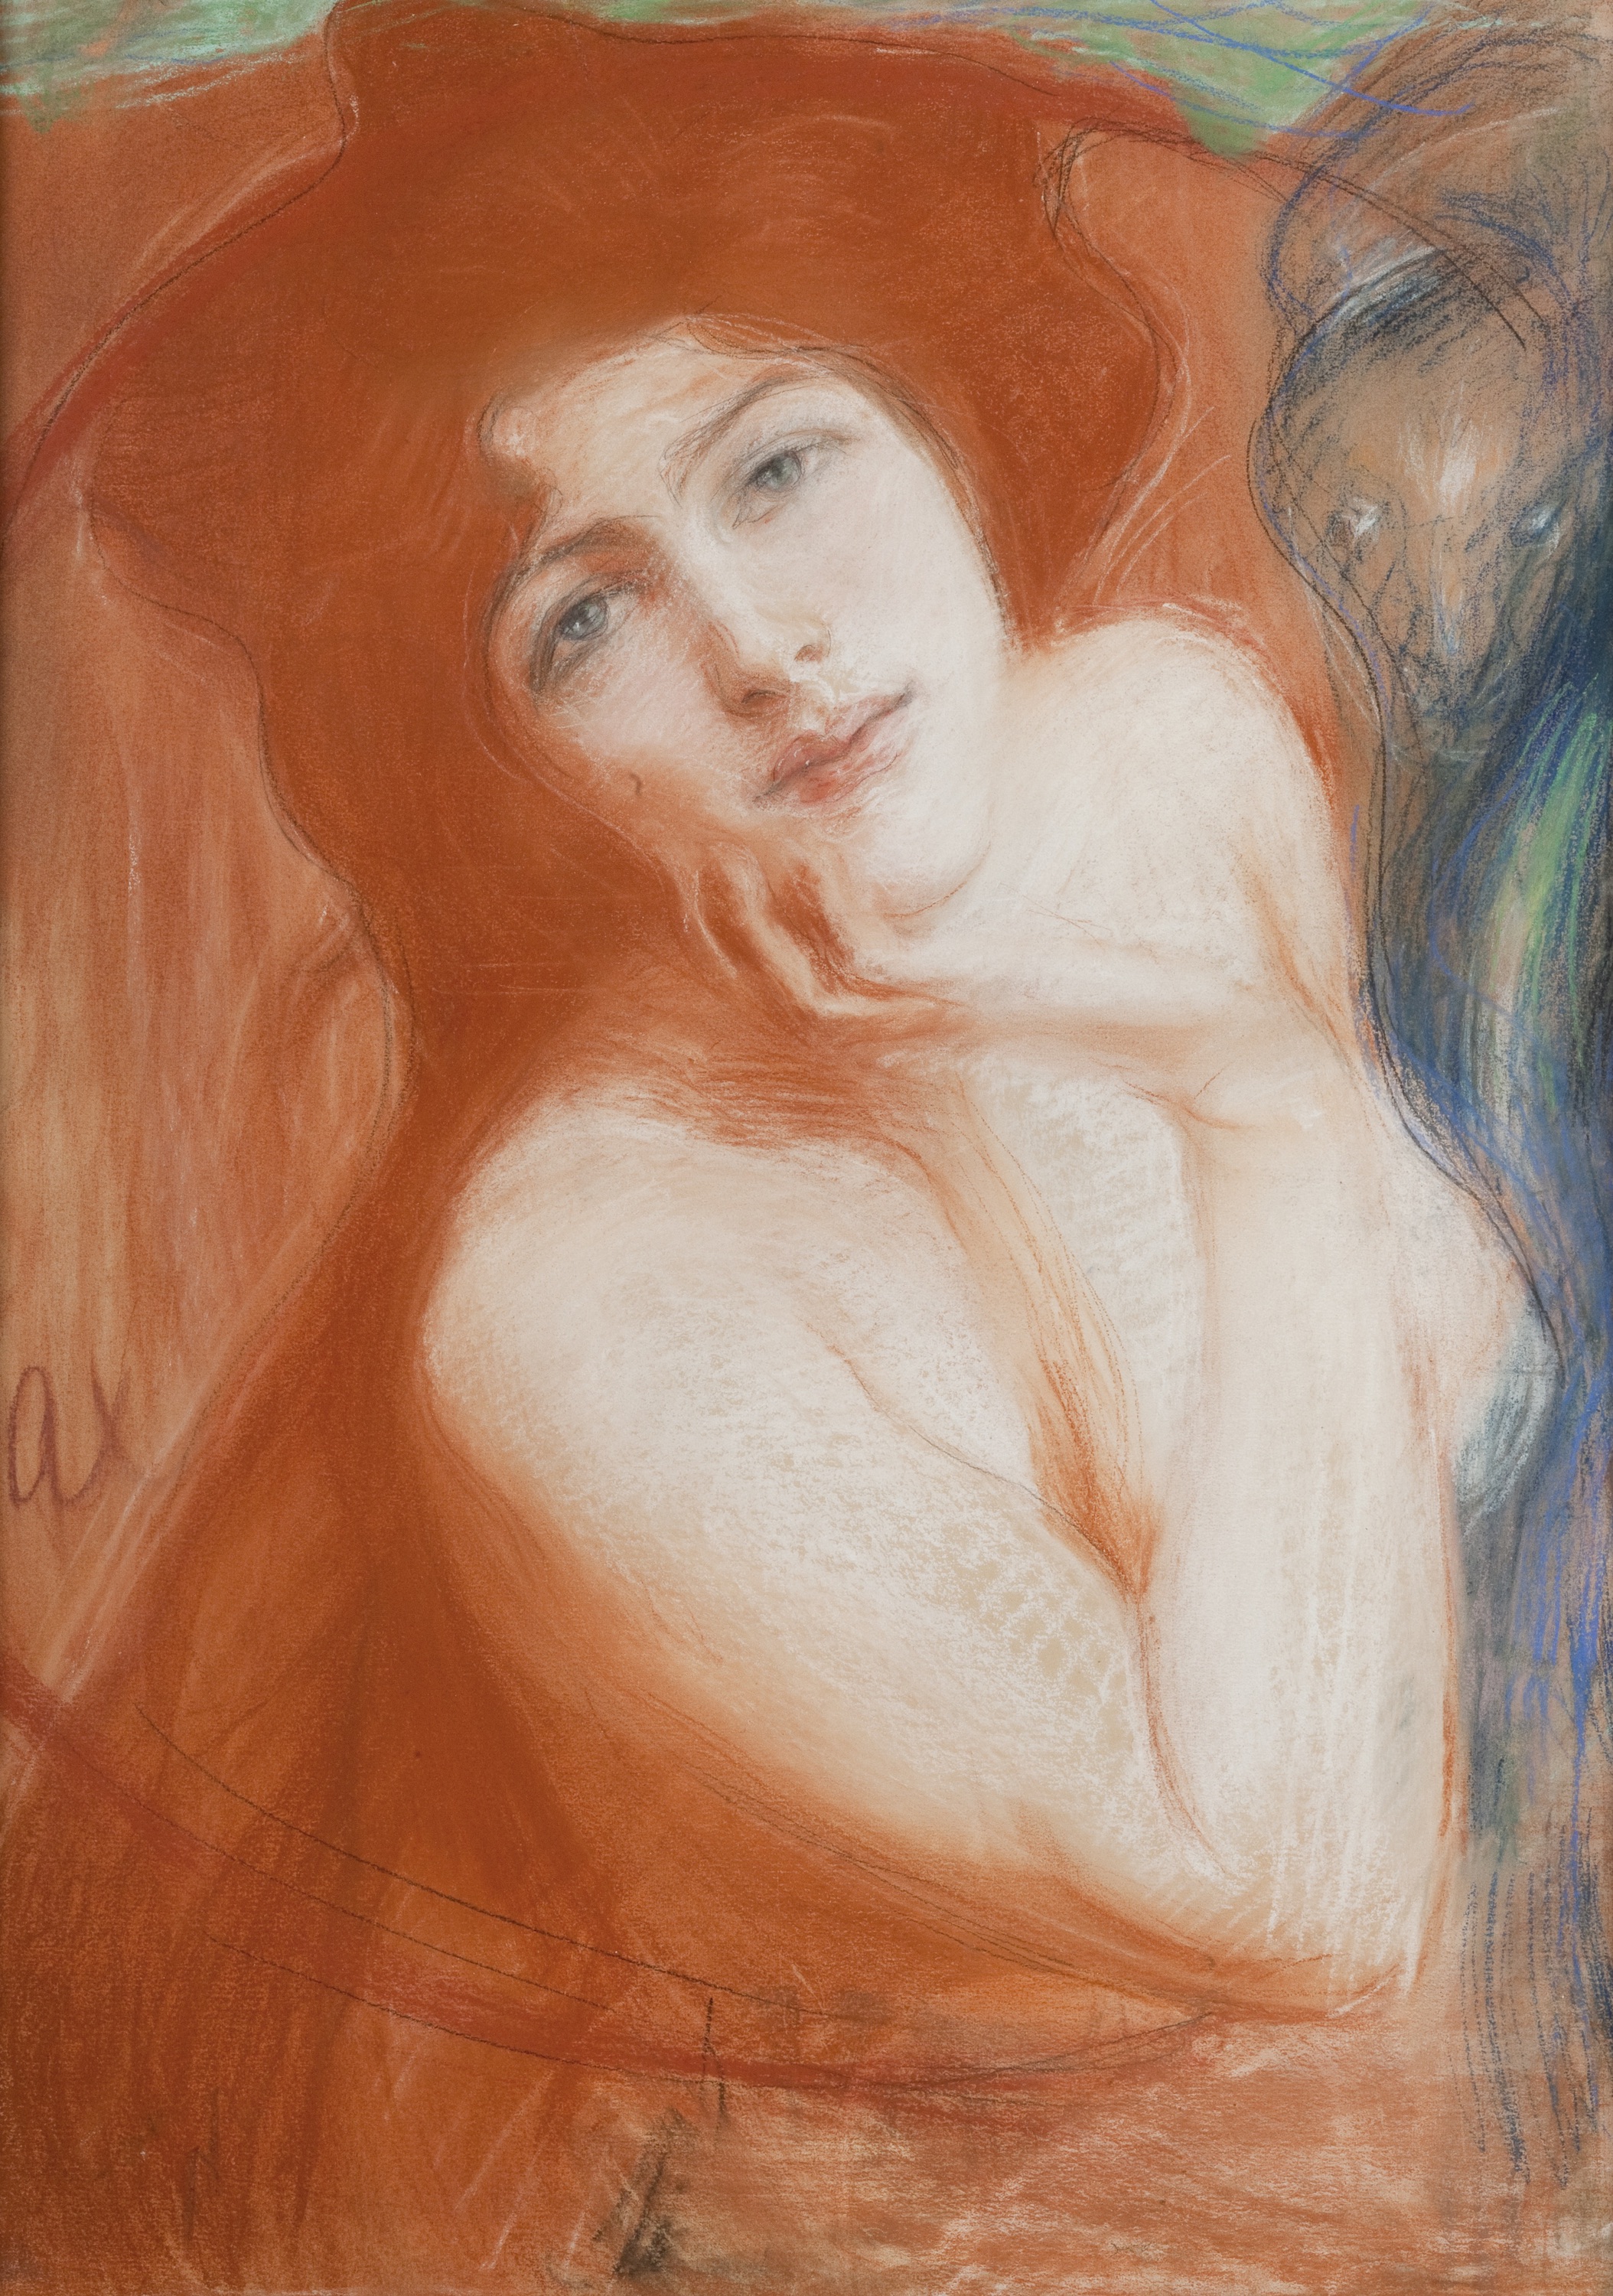 Kızıl Saçlı Kadın by Teodor Axentowicz - 1899 